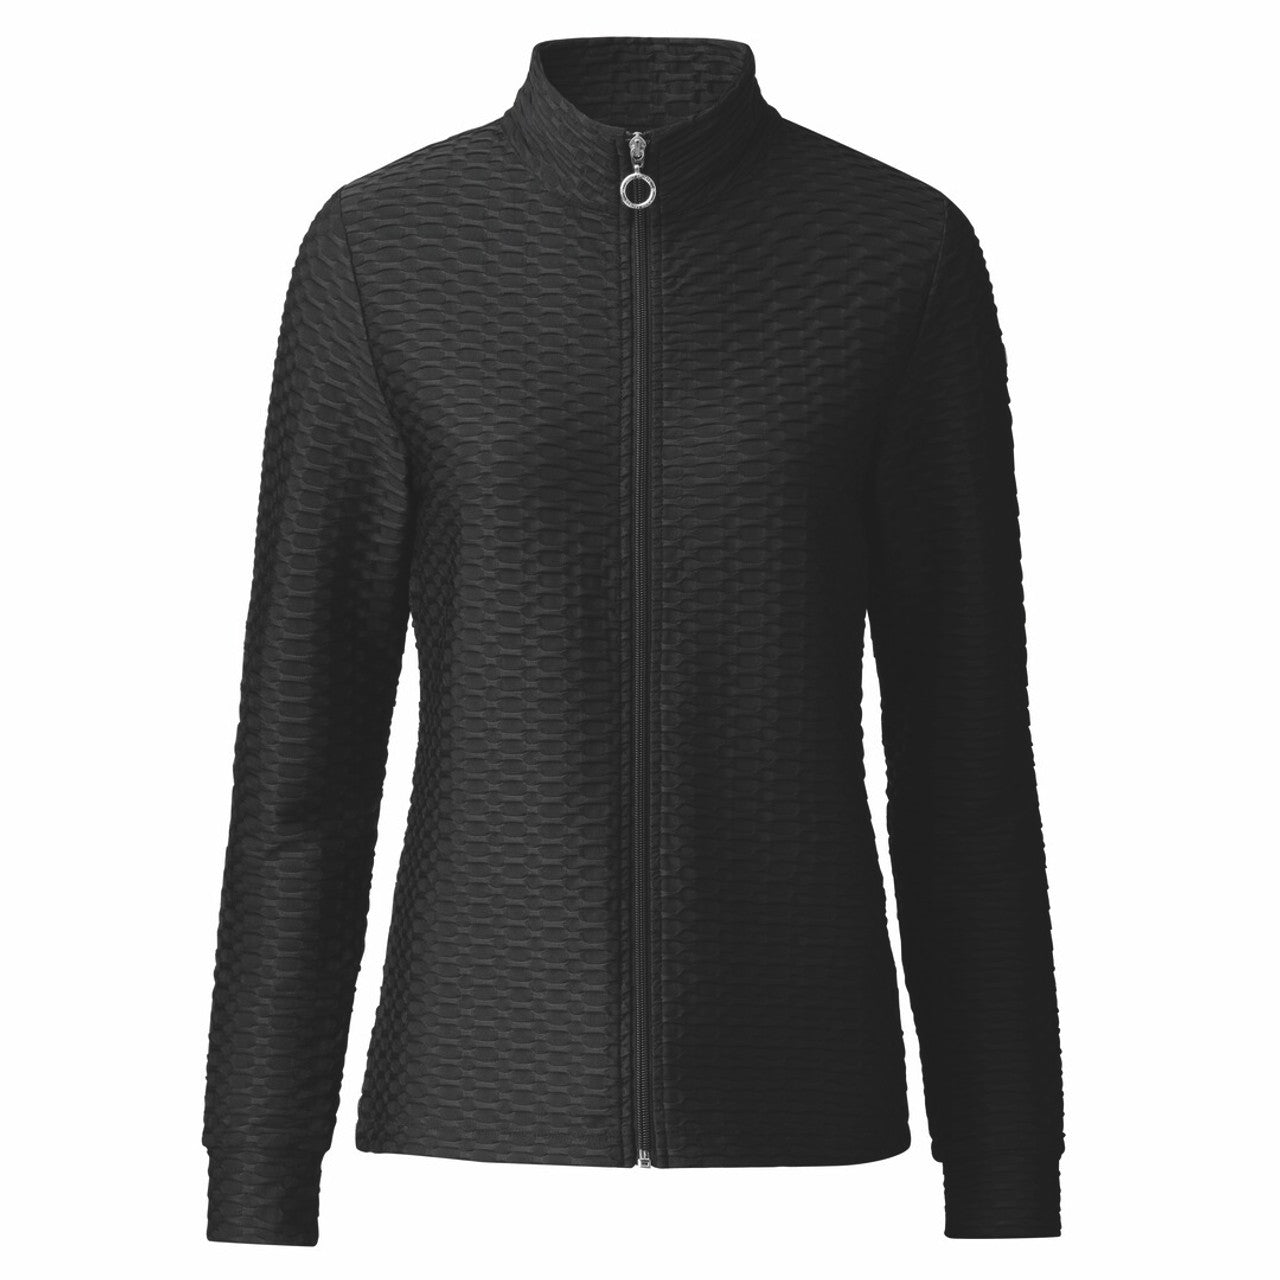 Daily Sports- Verona Full Zip Jacket Black (Style#: 443/195S23)